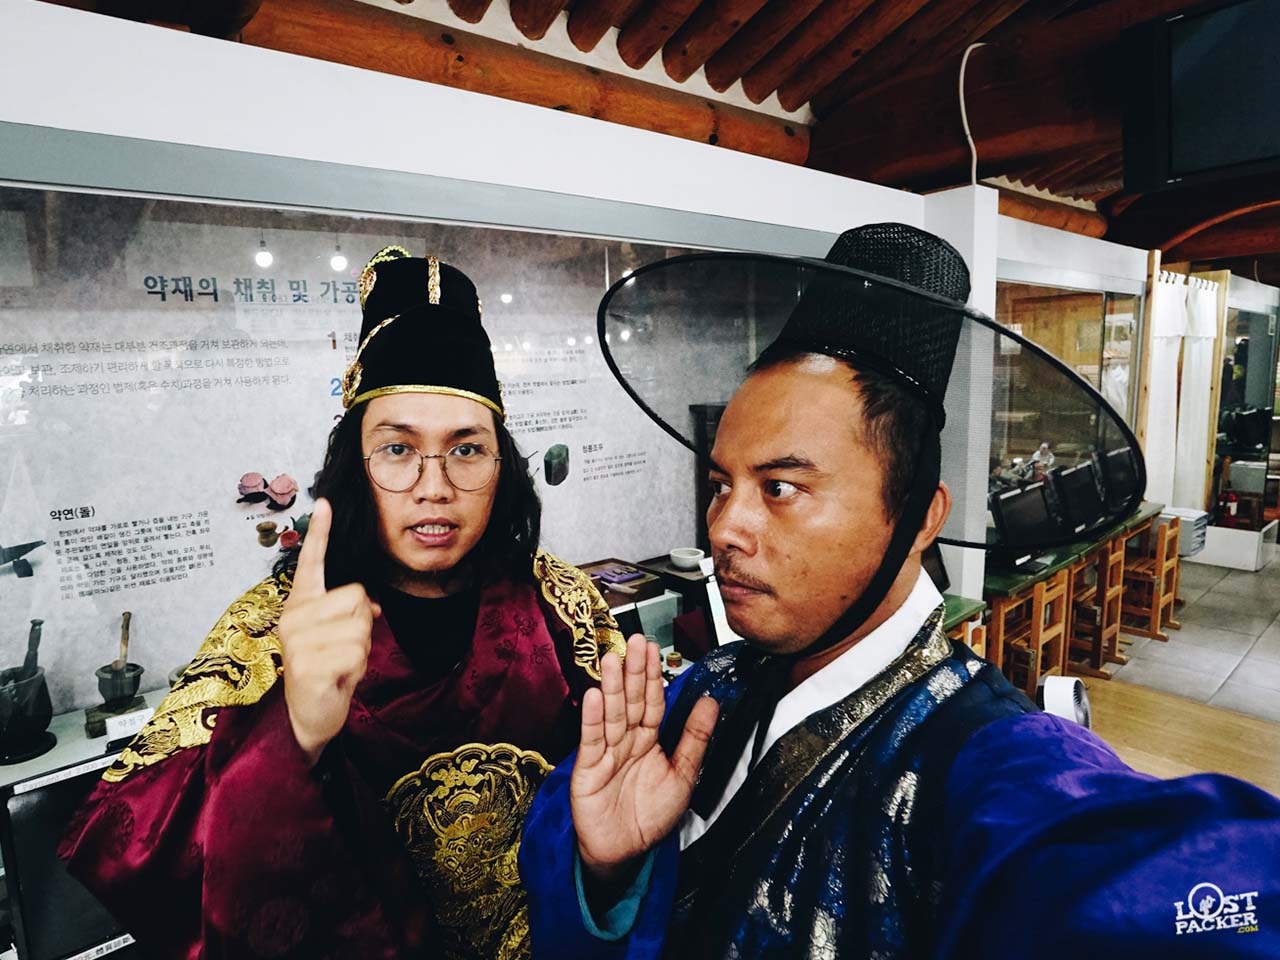 Ferry dan Sutiknyo dengan kostum Hanbok